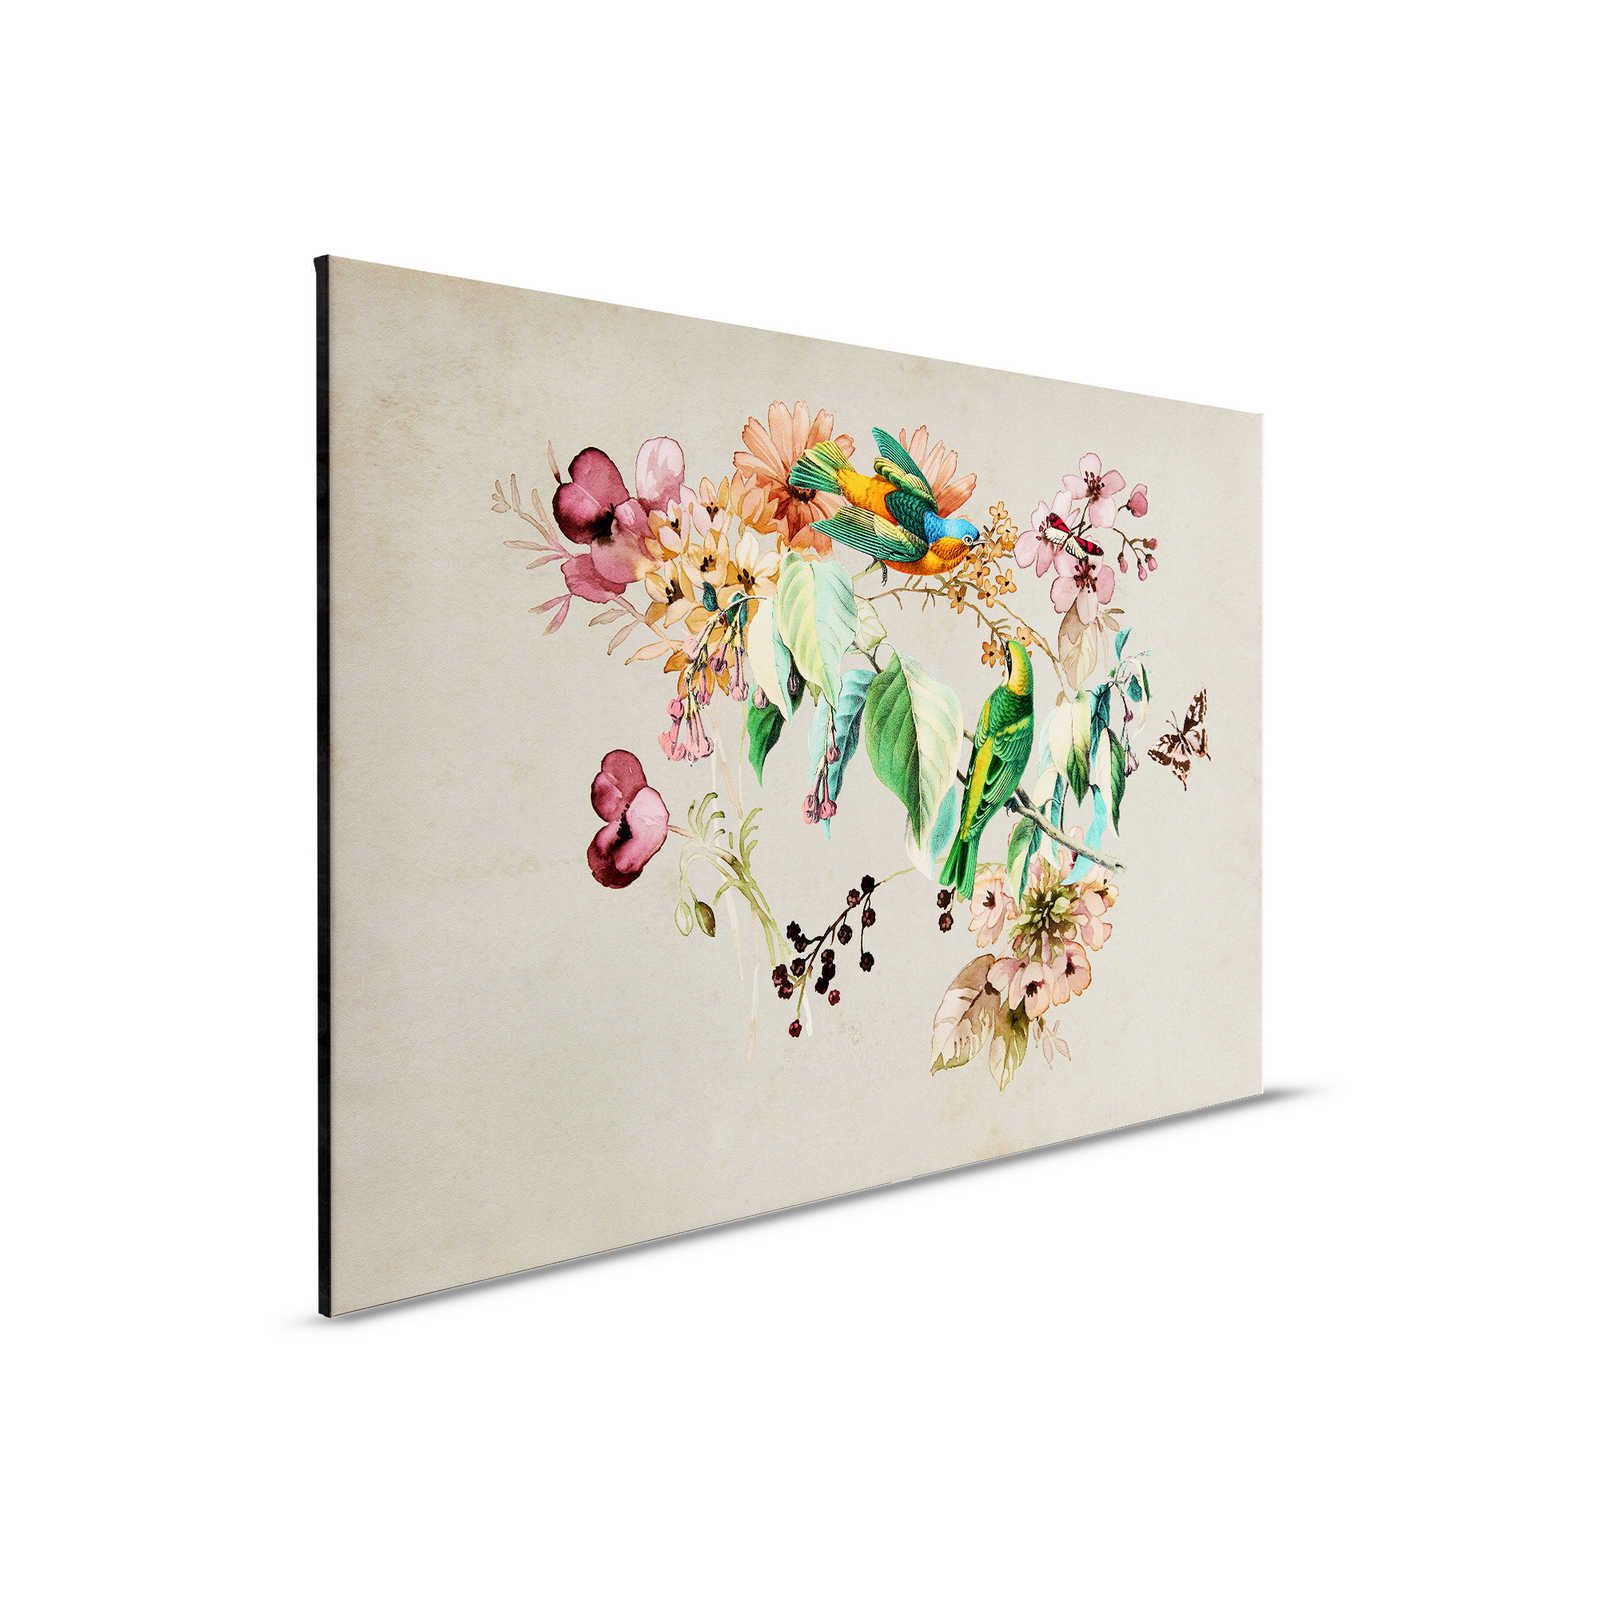 Nido d'amore 1 - Quadro su tela con fiori e uccelli colorati ad acquerello - 0,90 m x 0,60 m
